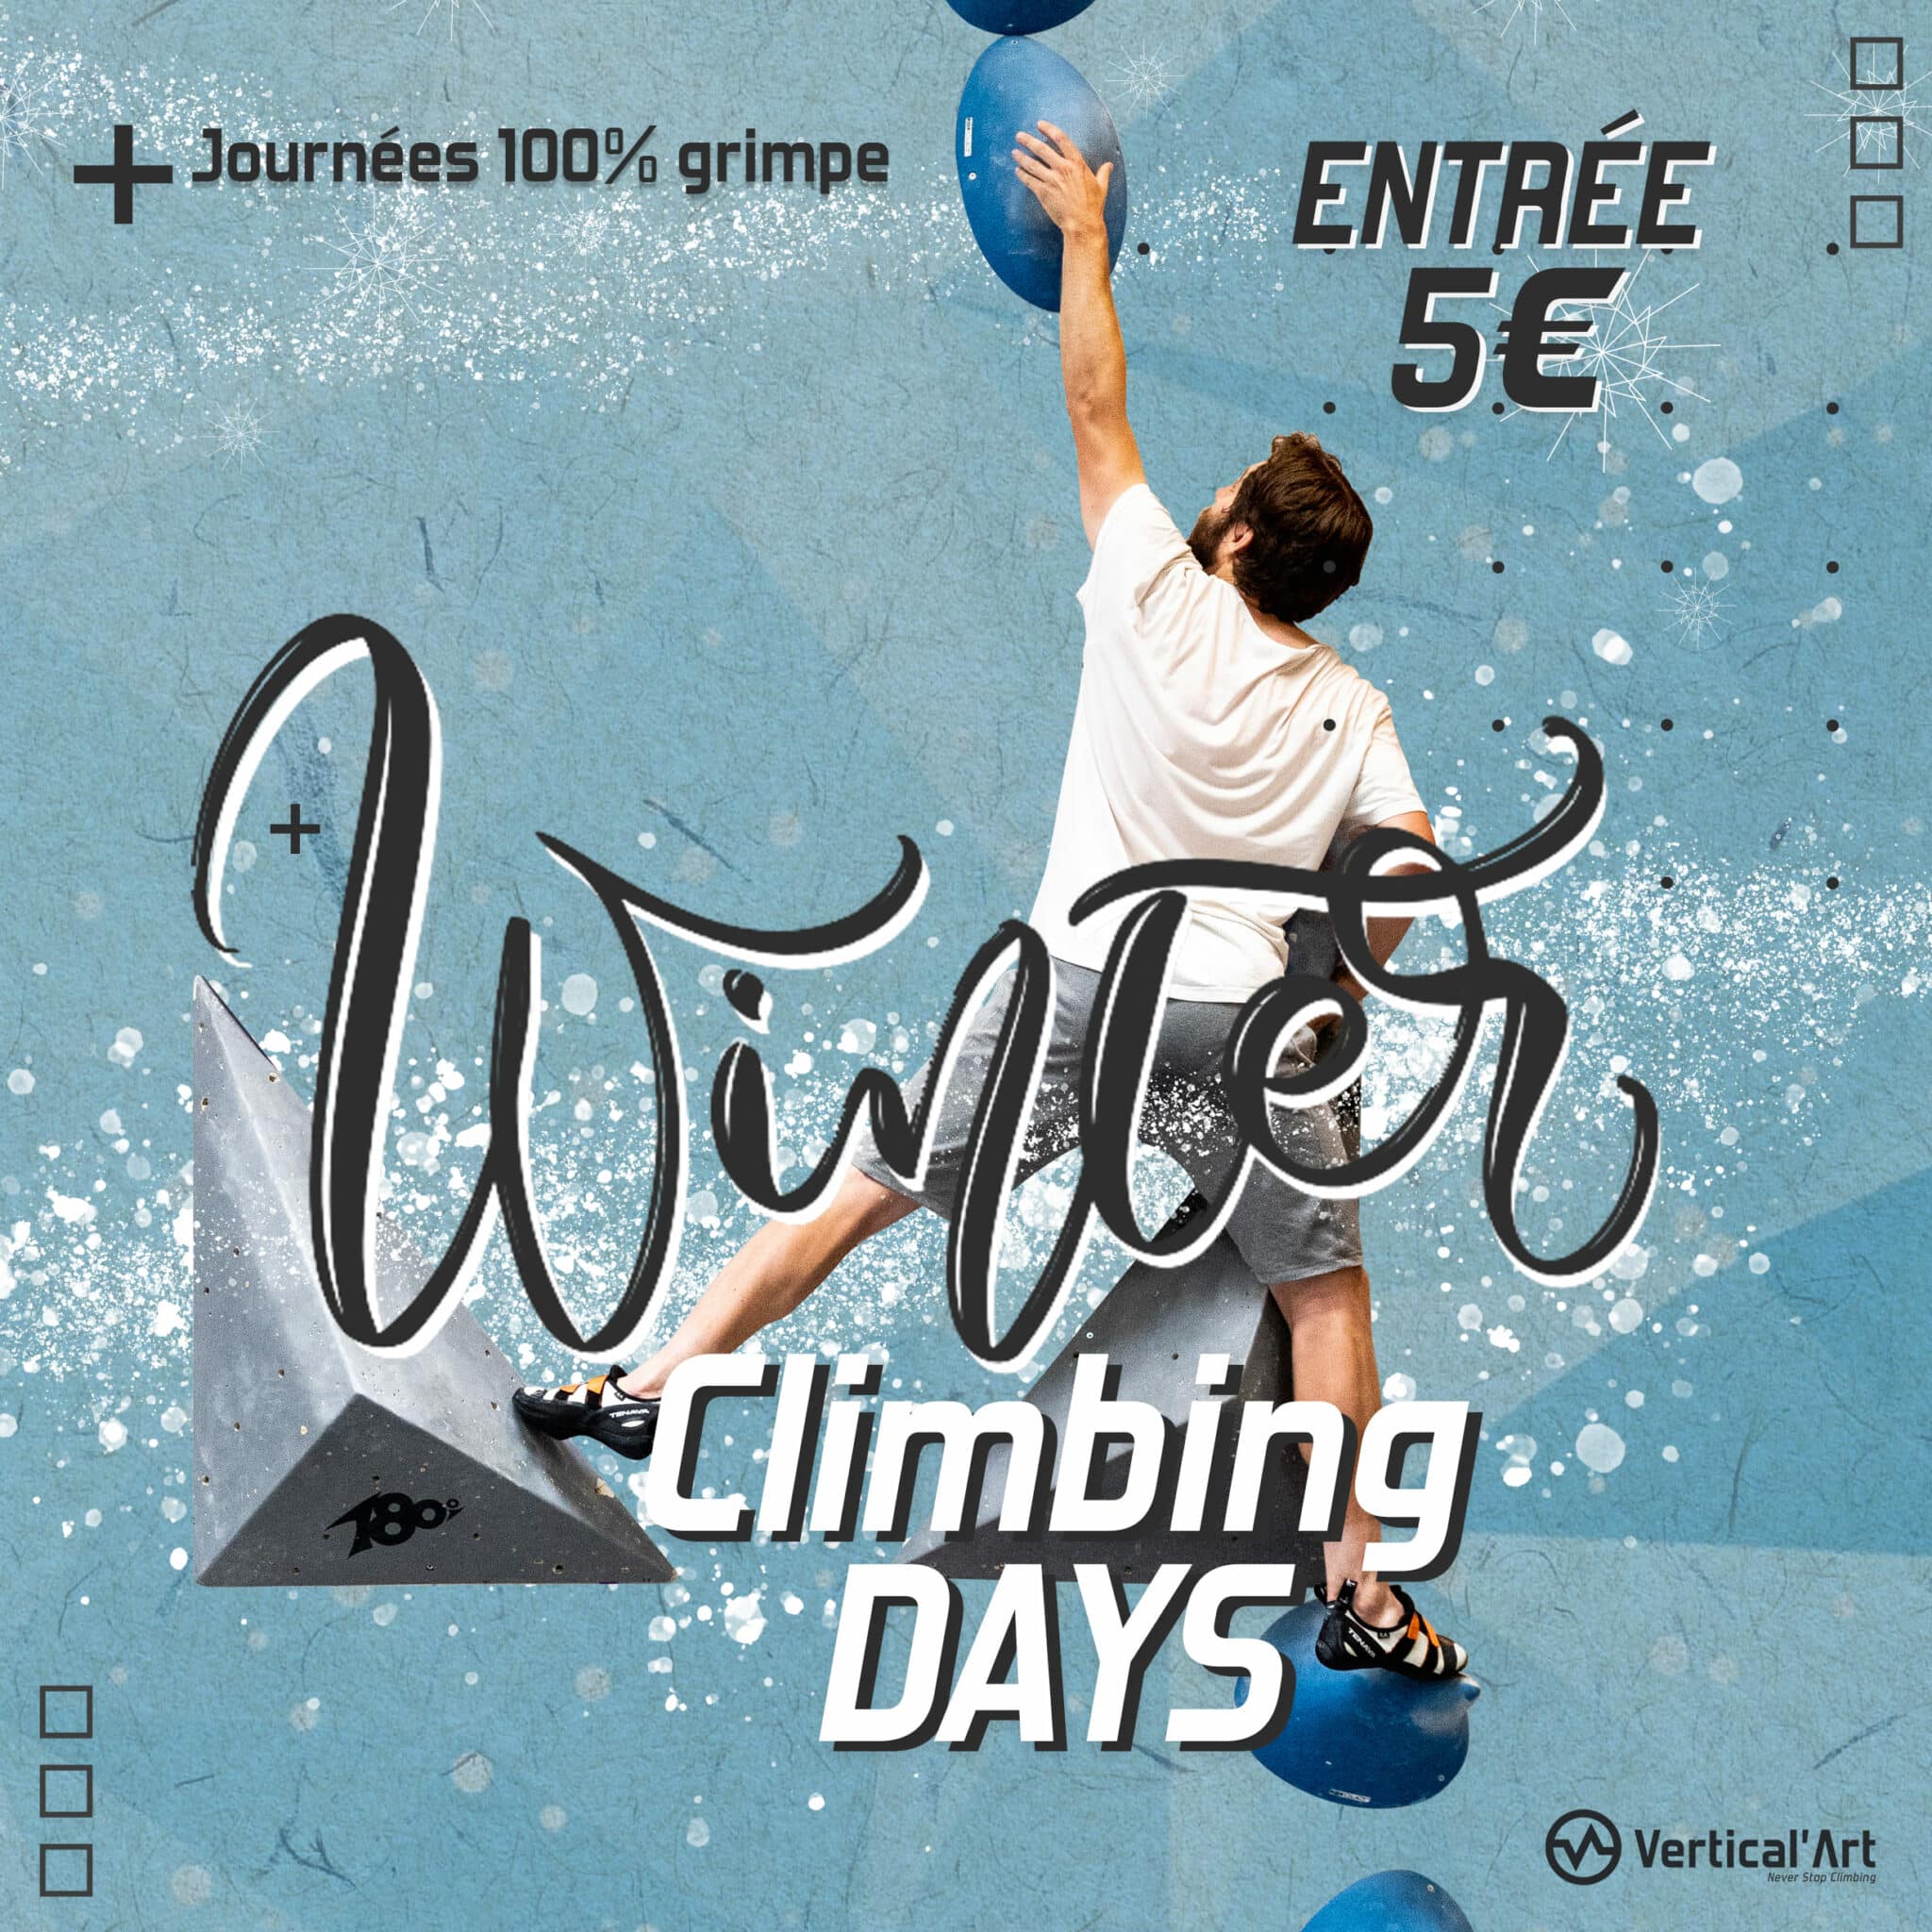 Winter Climbing Days à Vertical’Art Pigalle, escalade gratuite pour tous pendant les vacances d'hiver